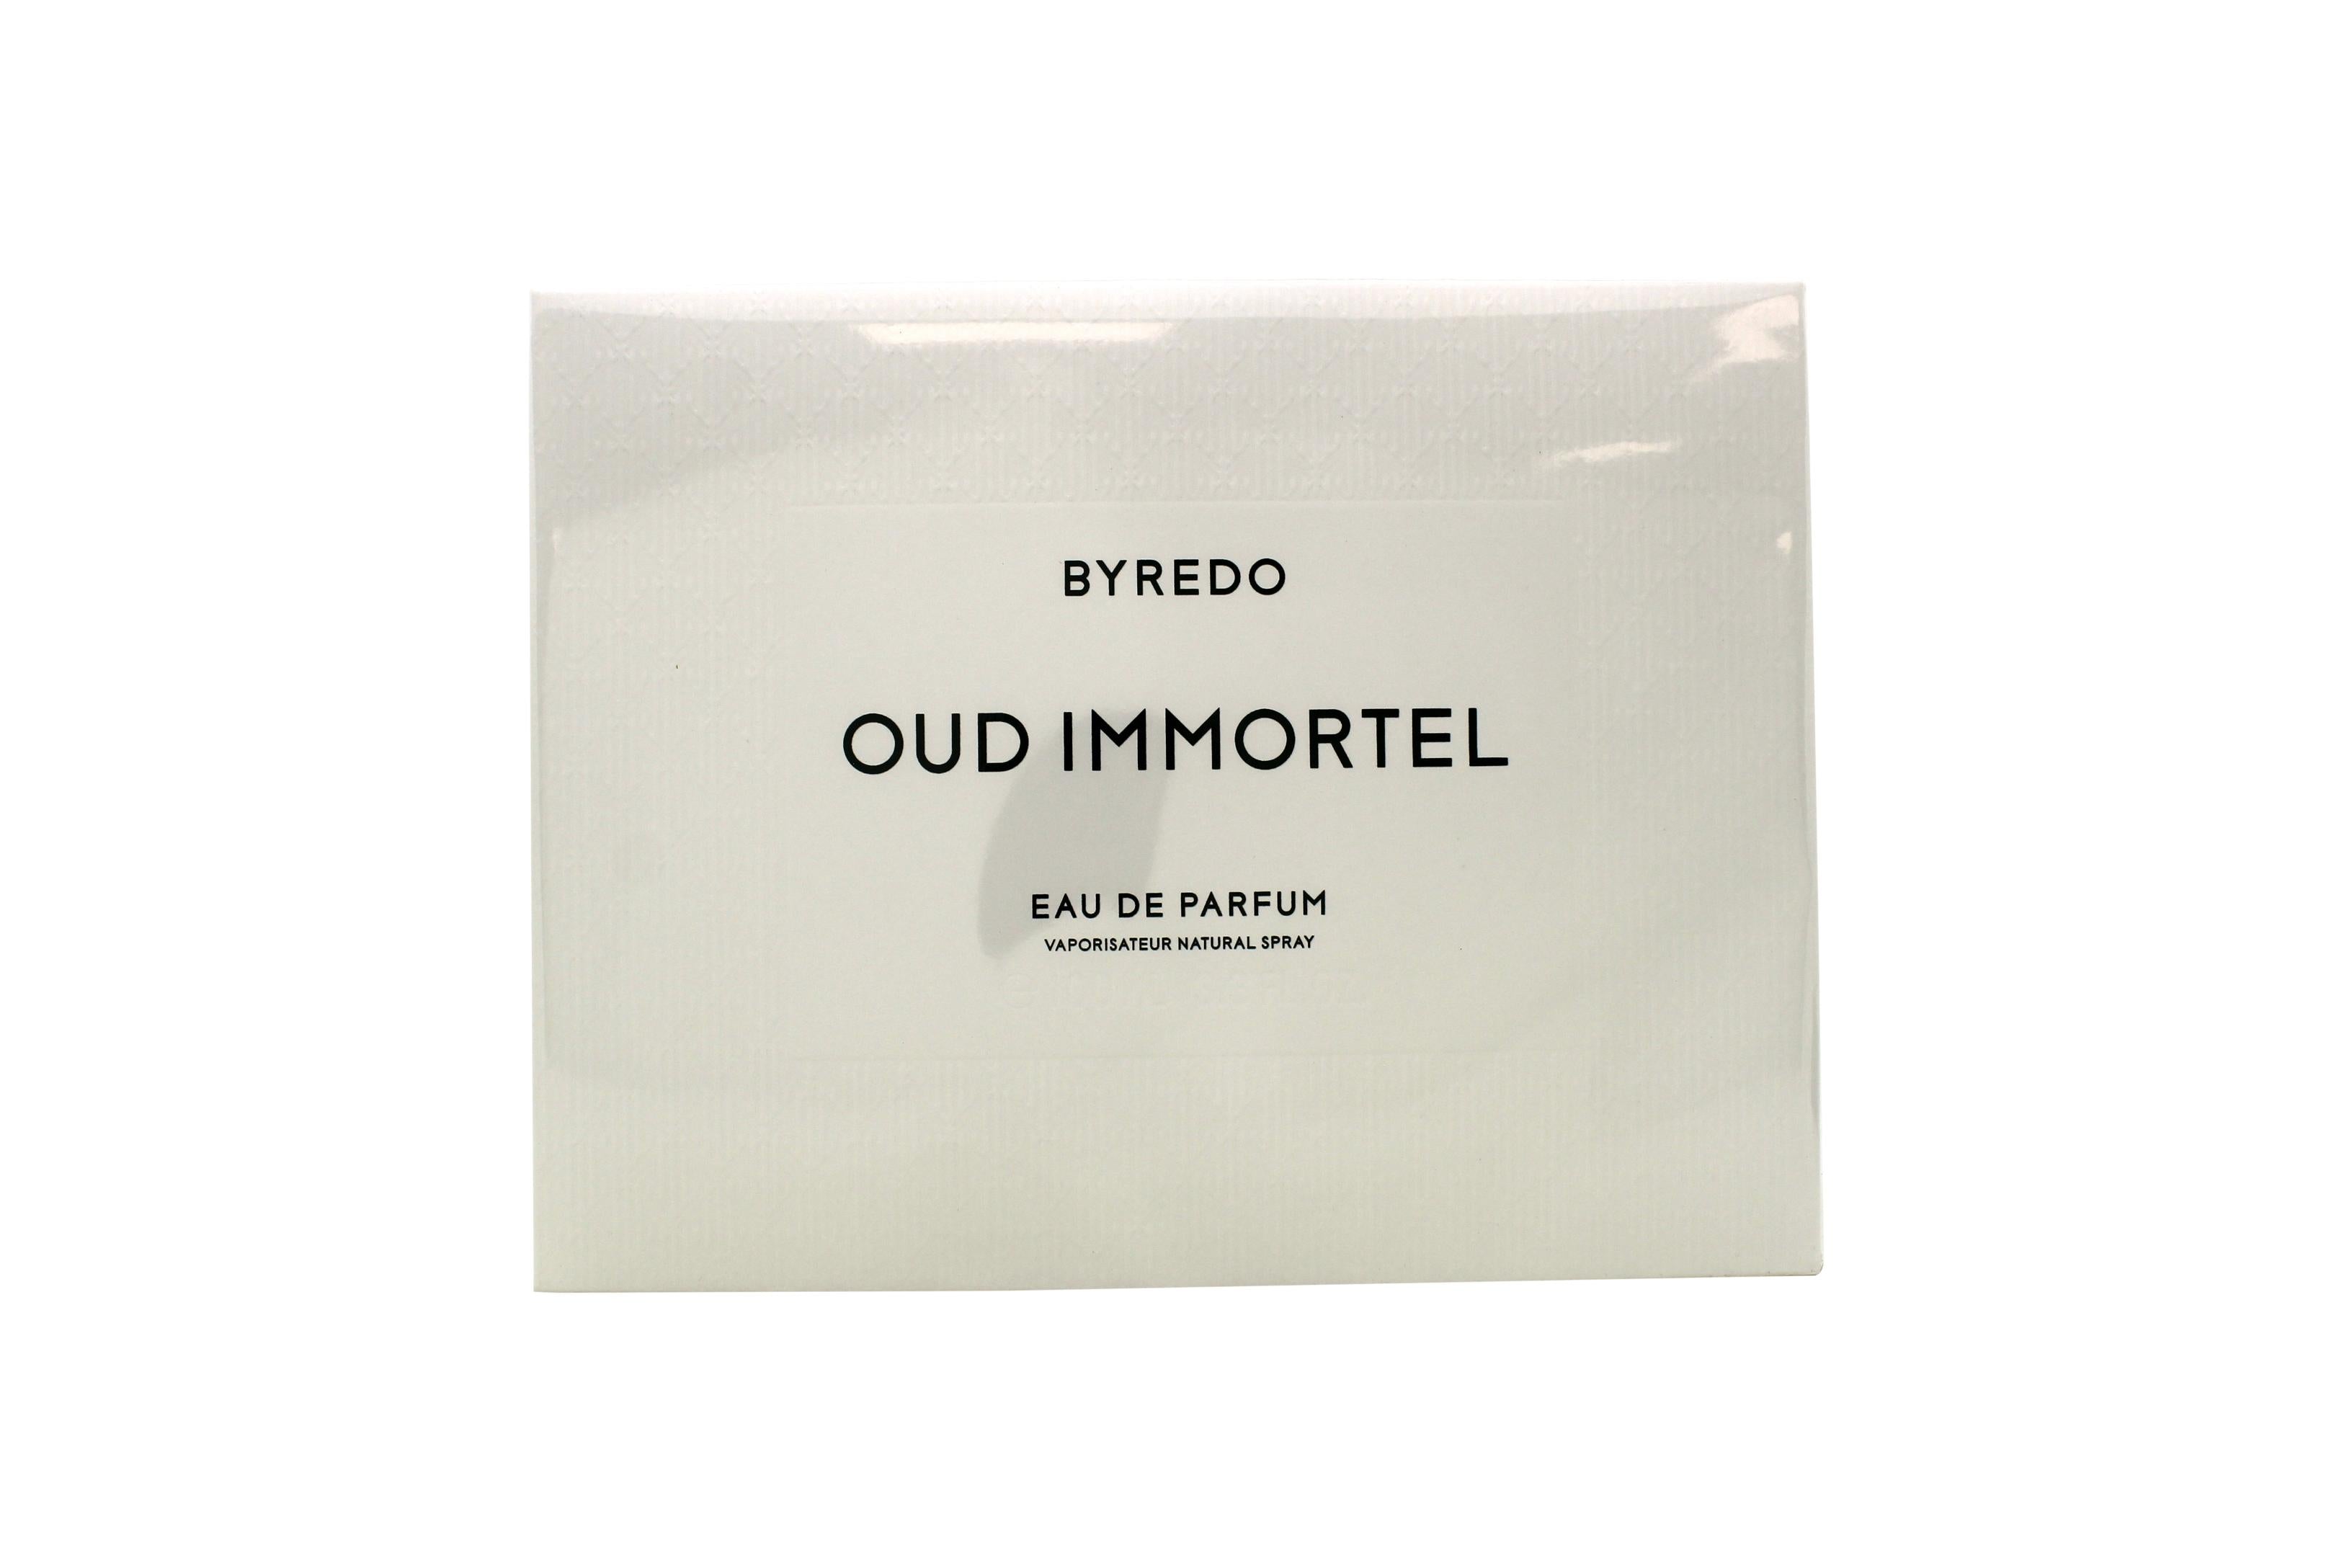 Byredo Oud Immortel Eau de Parfum 100ml Spray - Peacock Bazaar